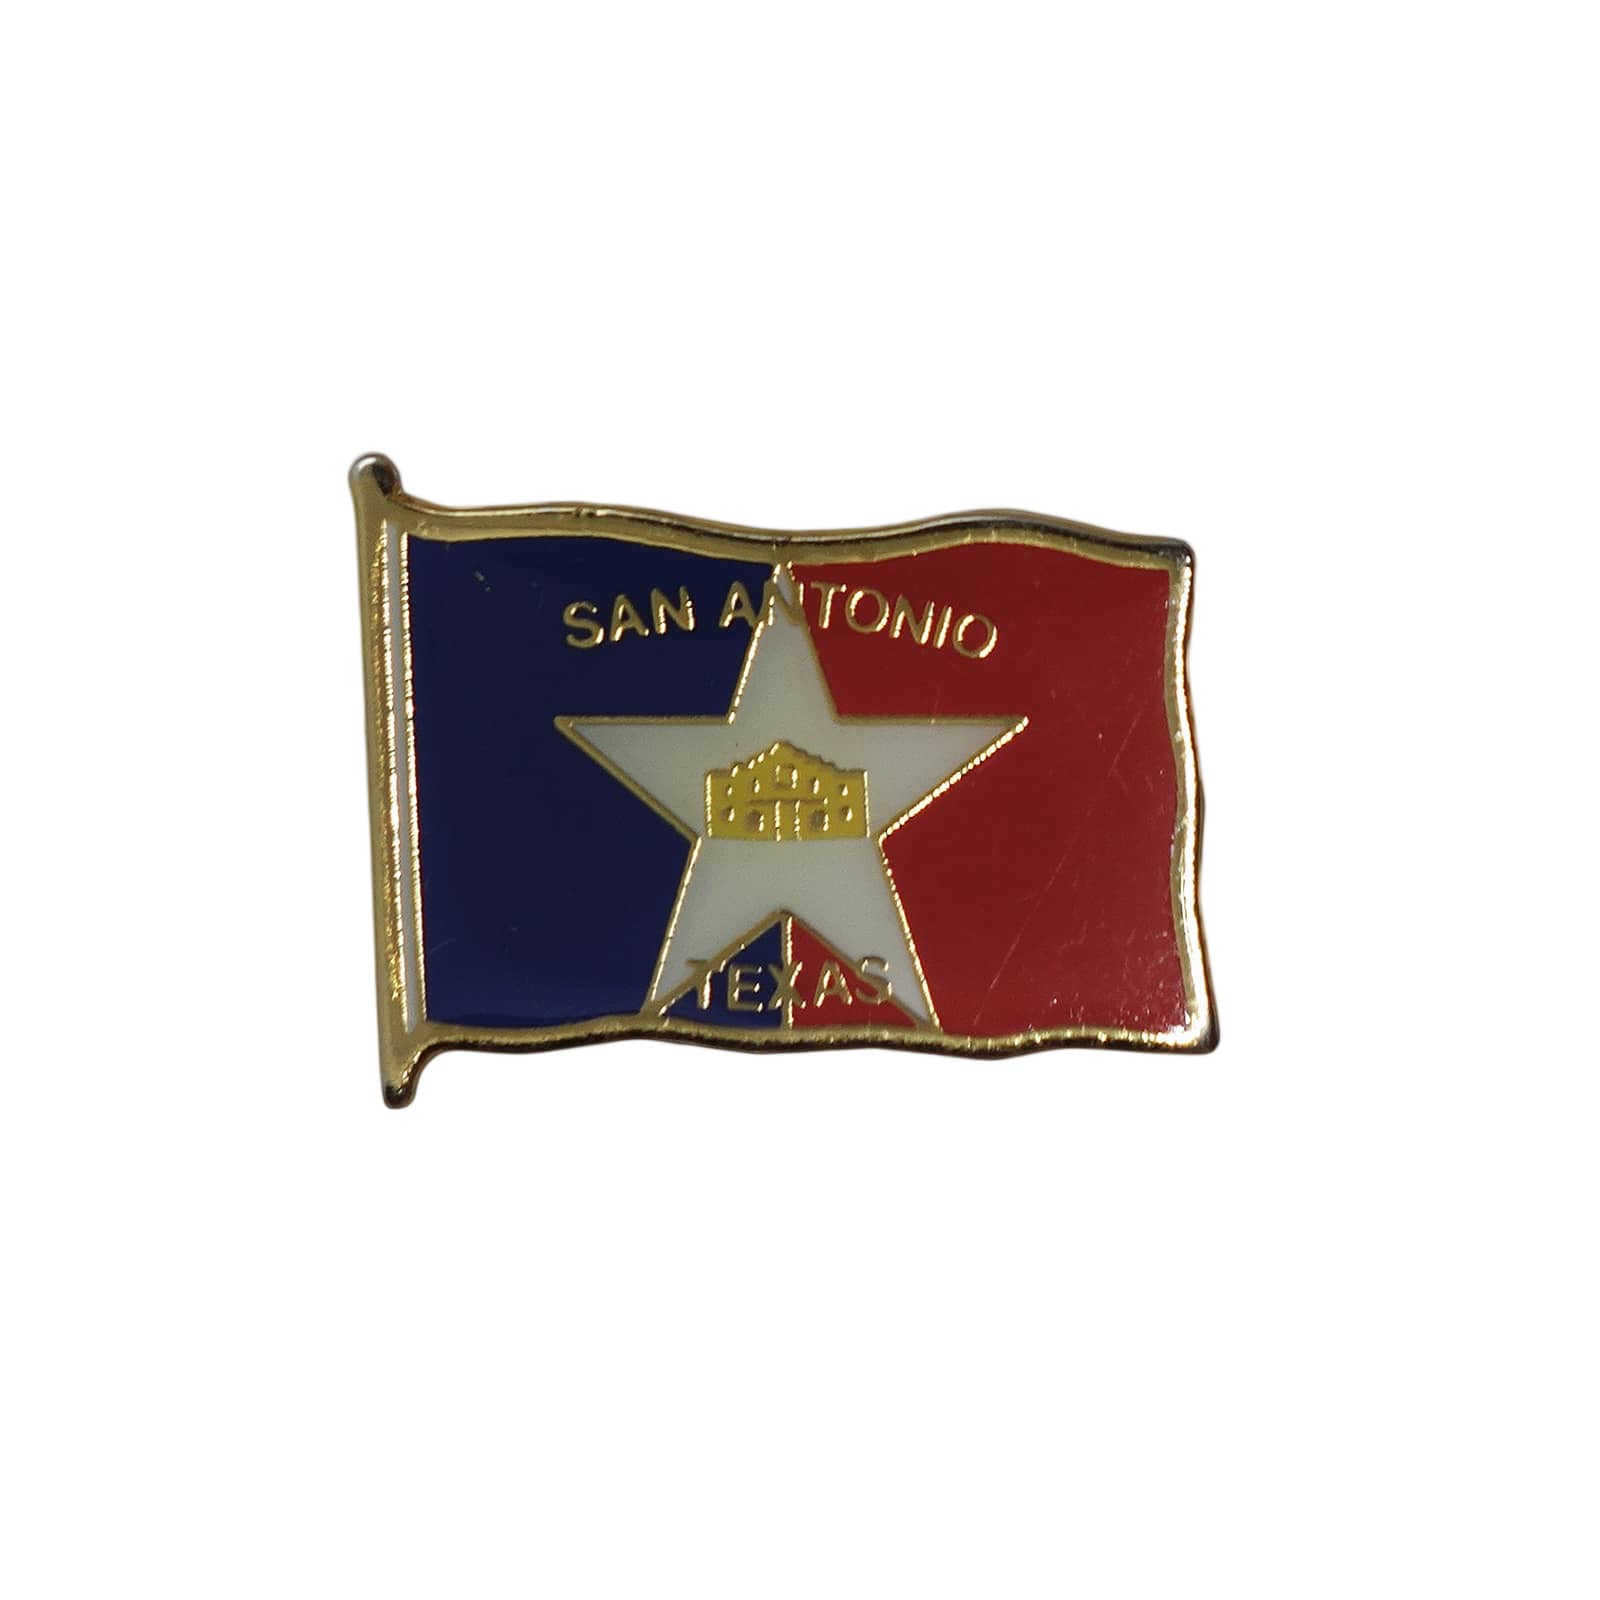 SAN ANTONIO ピンズ テキサス州 サンアントニオ市旗 留め具付き